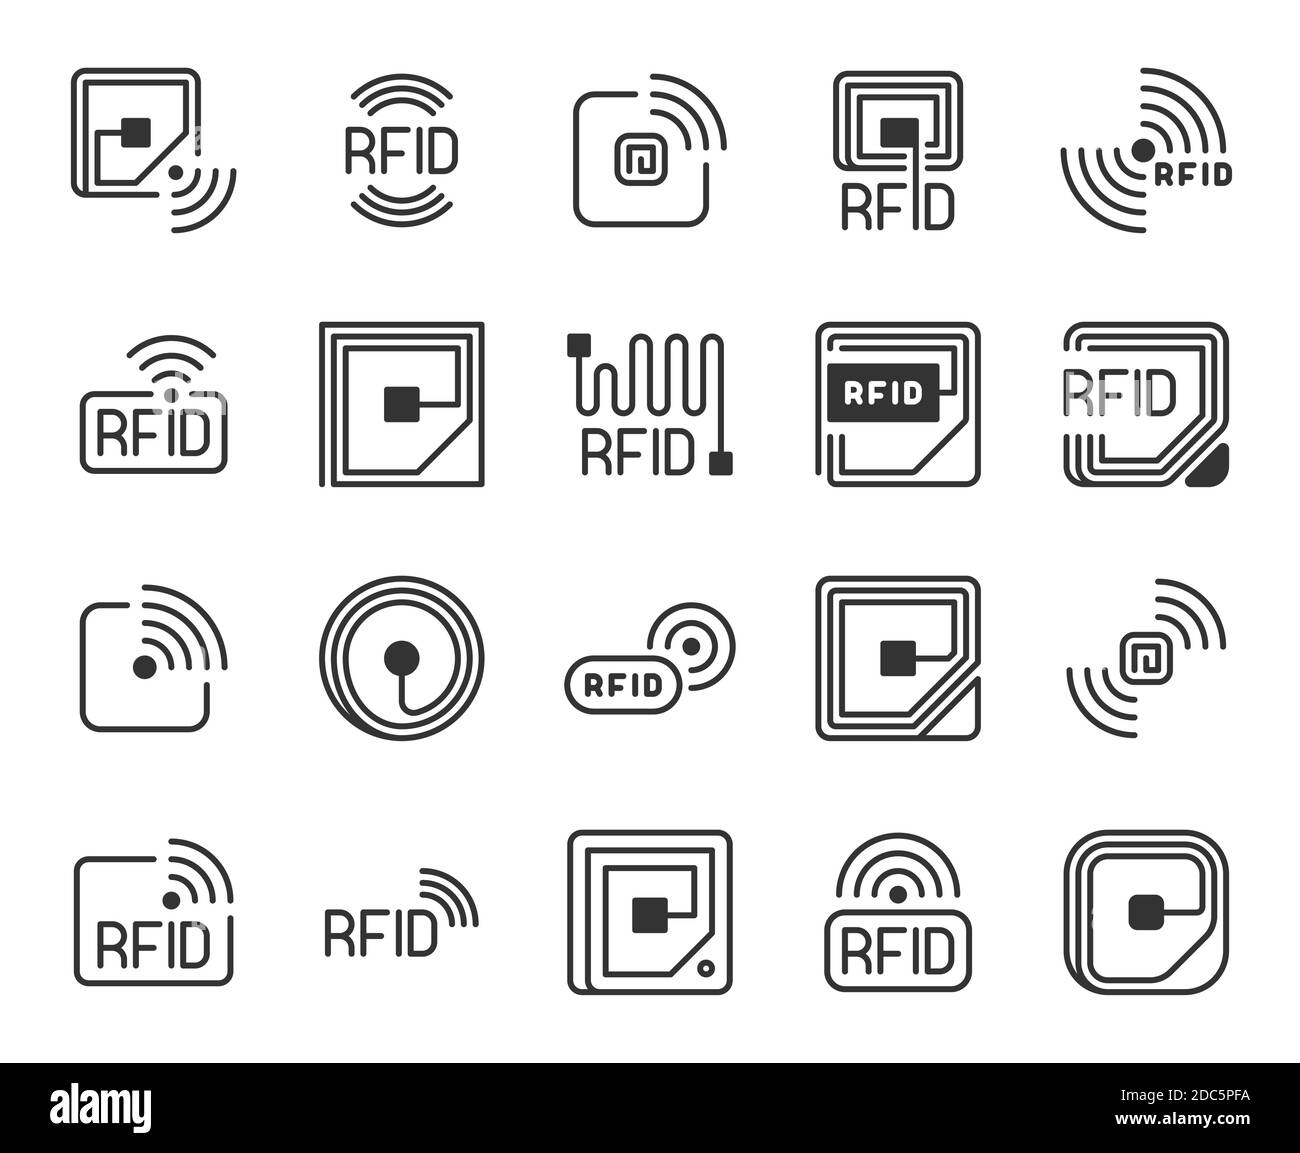 Icone RFID. Etichetta di identificazione delle radiofrequenze, etichetta, chip e logo della linea dell'antenna. Sistema wireless per il tracciamento e il controllo, simboli vettoriali Illustrazione Vettoriale